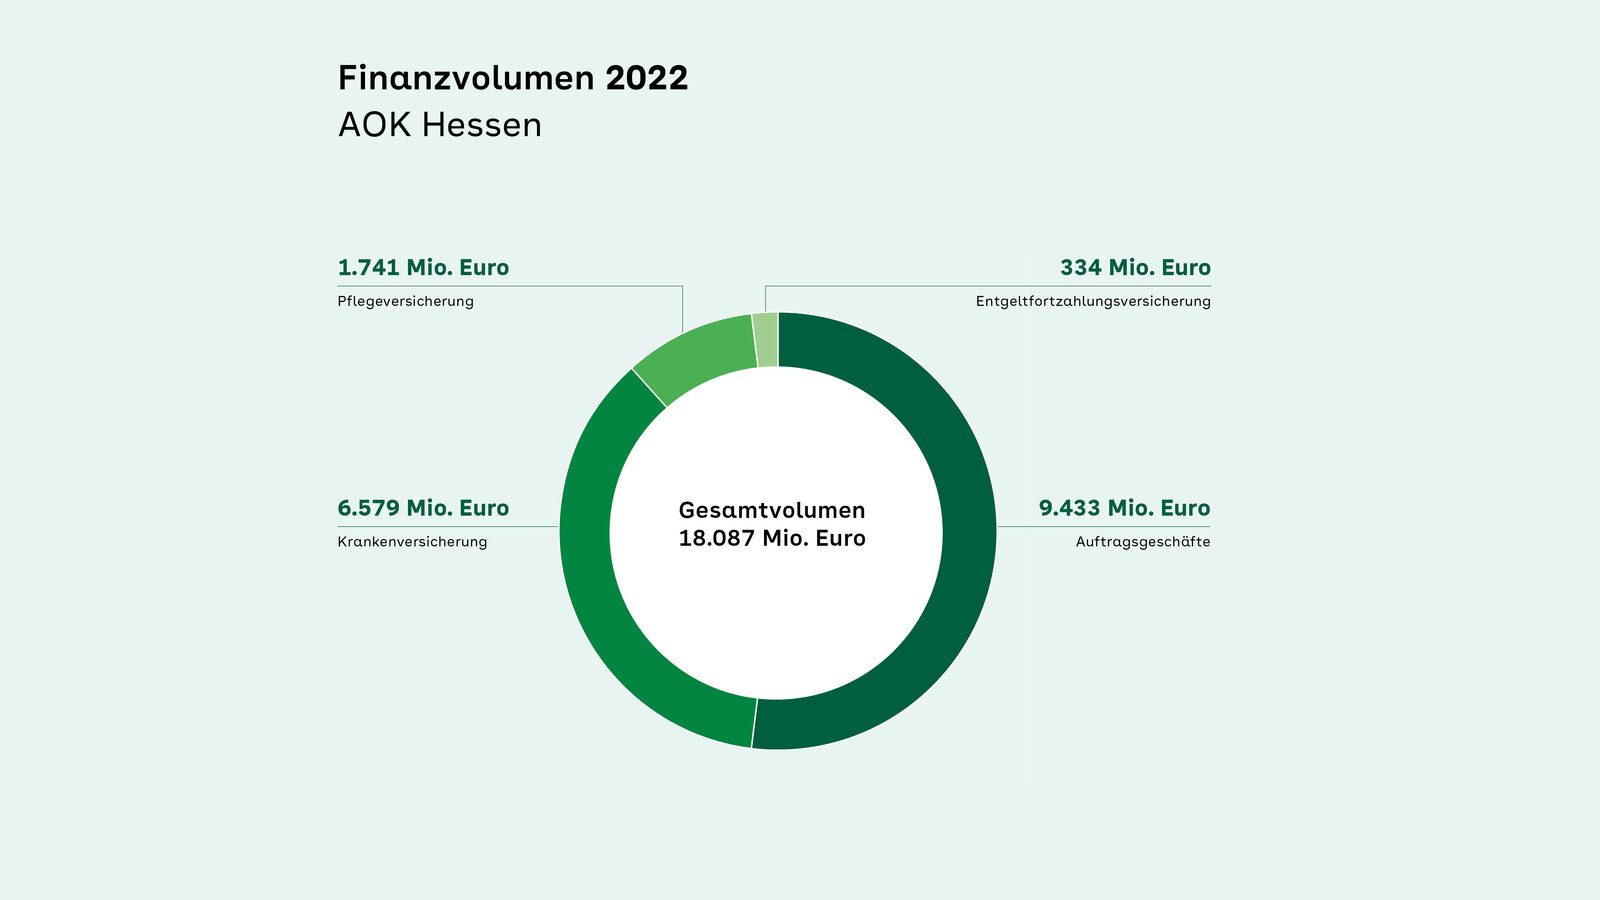 Diagramm zum Finanzvolumen der AOK Hessen 2022